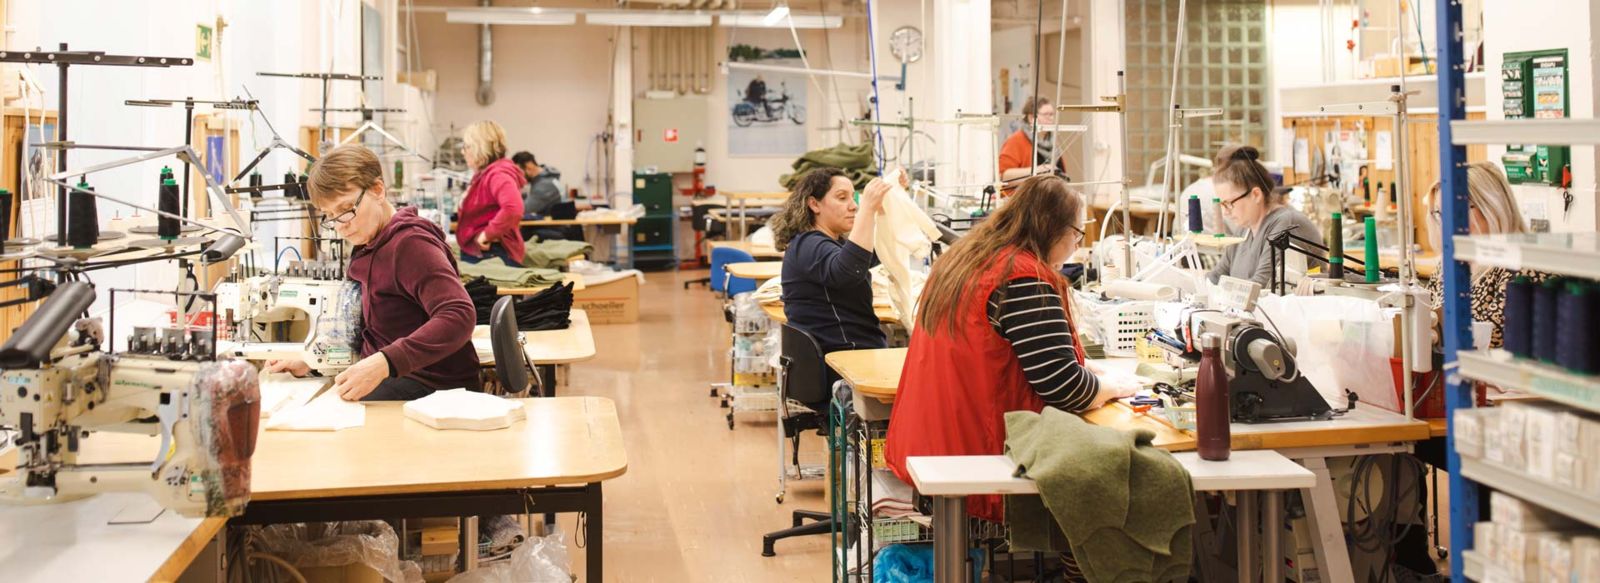 Ruskovilla sewing factory in Artjärvi, Finland